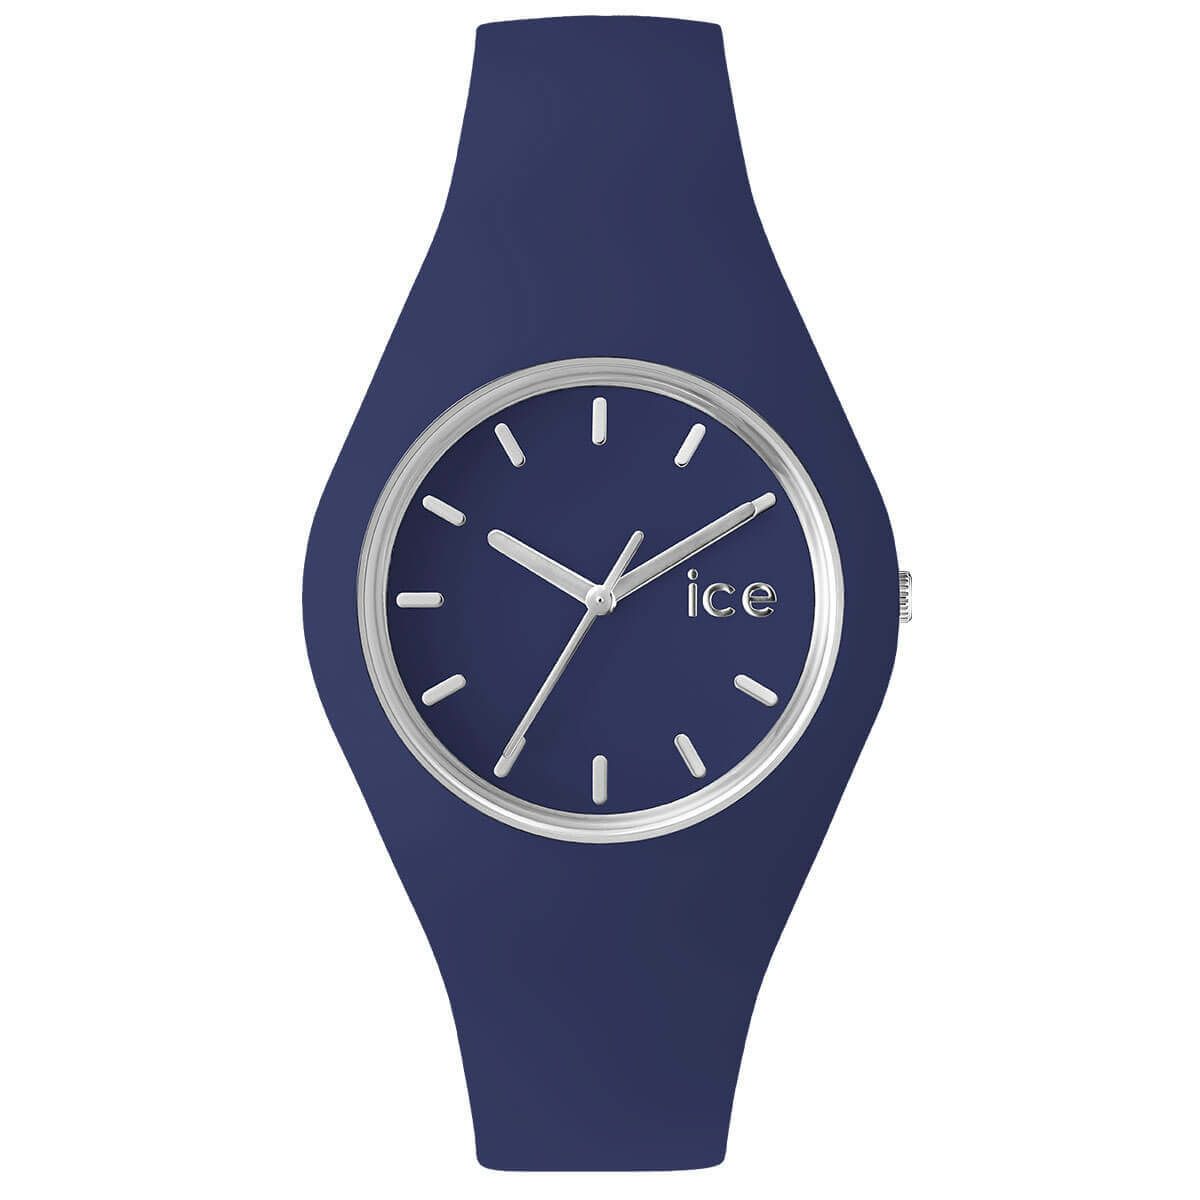 ICE grace - アイスグレース クラッシーブルー - ミディアム | ice 